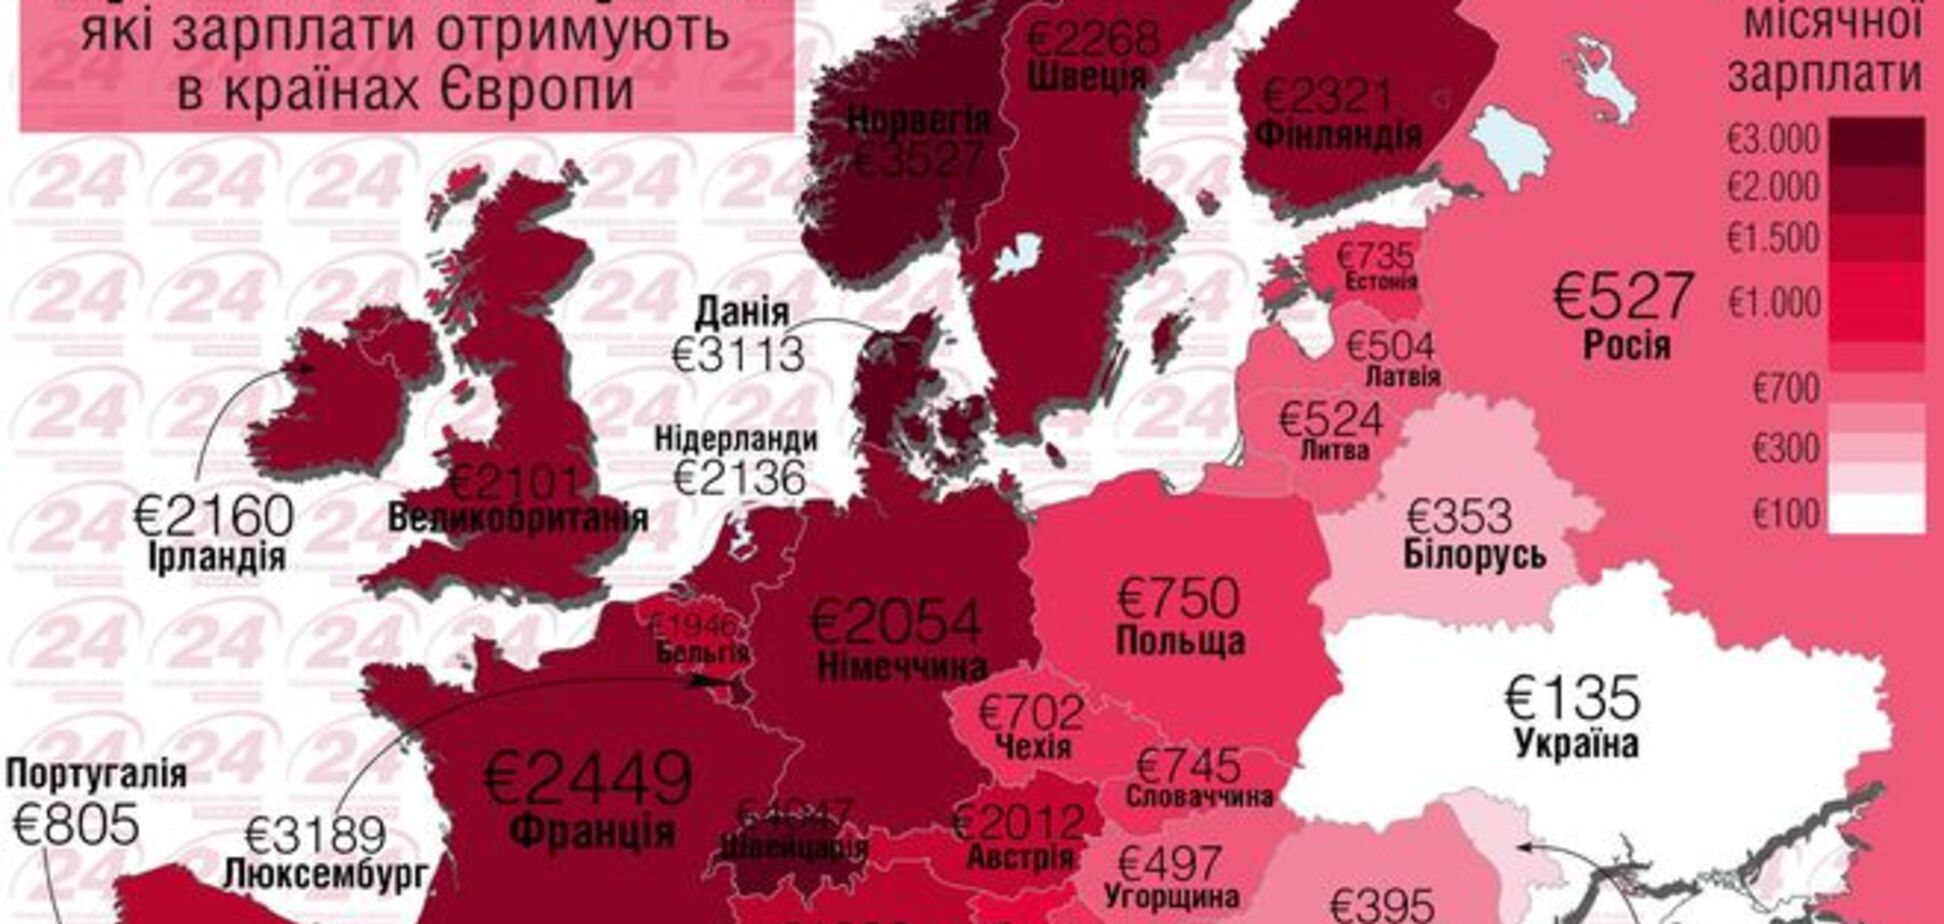 В Украине самая низкая среднемесячная зарплата в Европе: инфографика